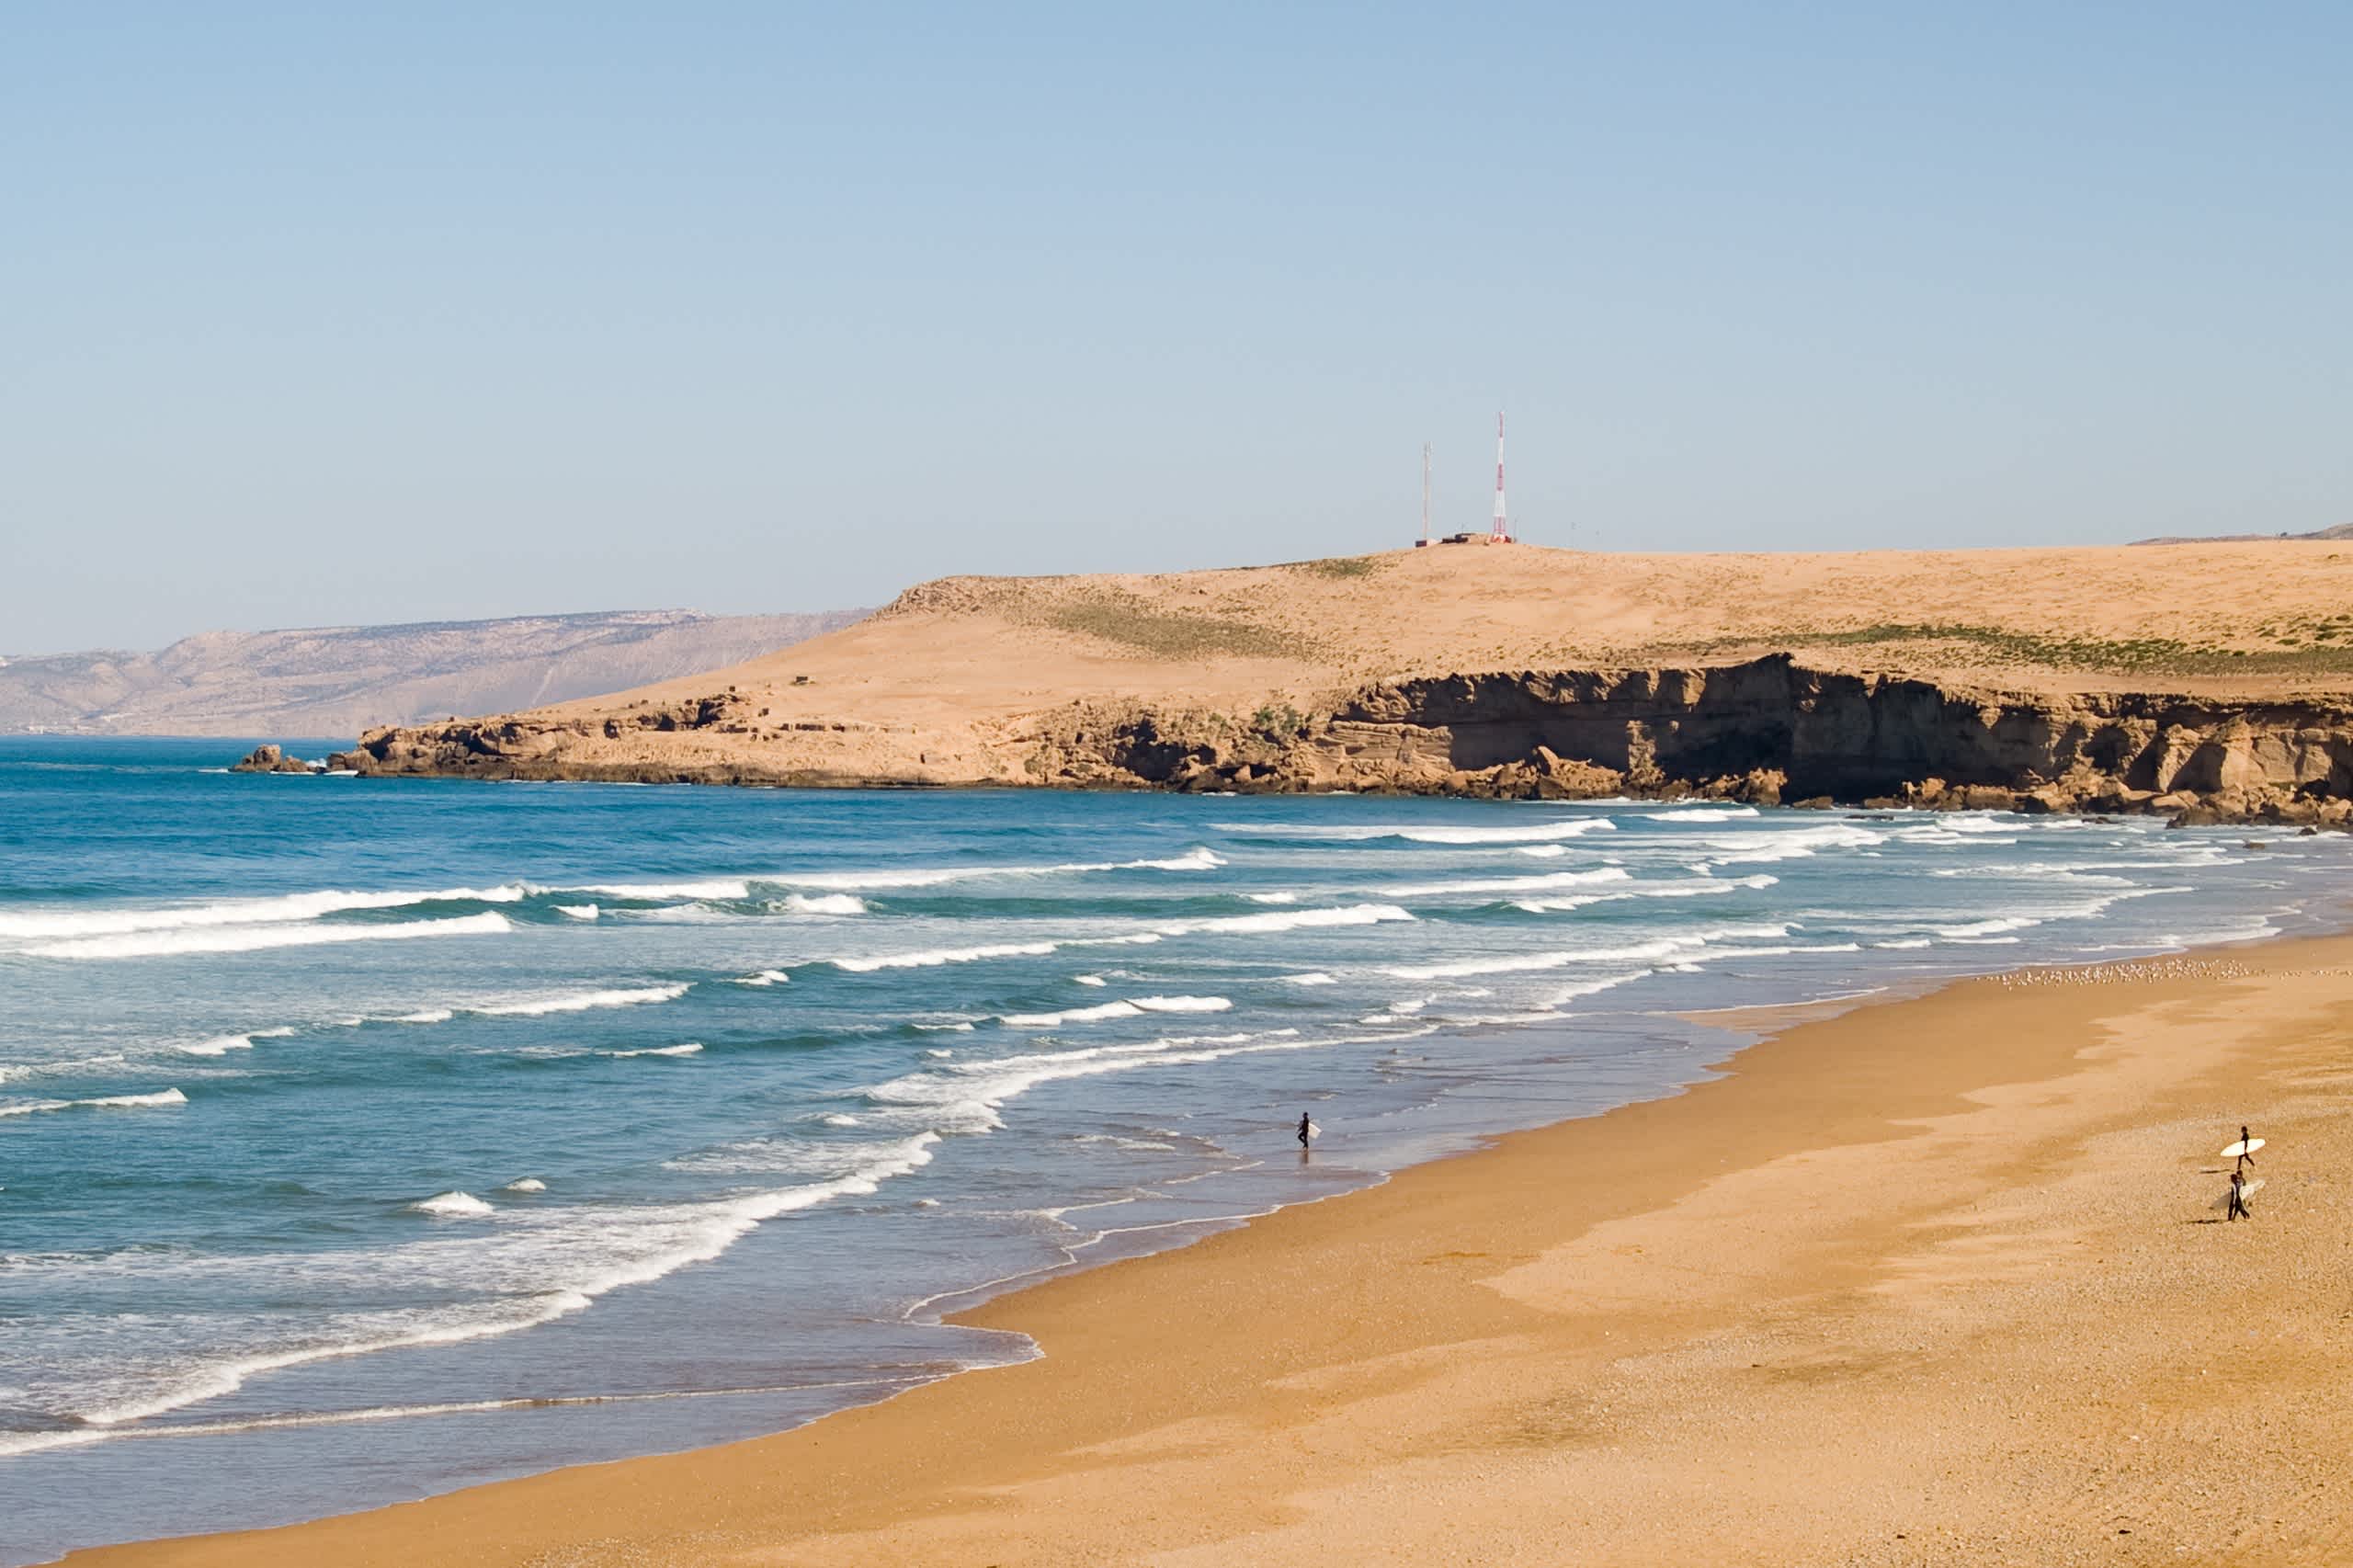 Surfeurs sur l'immense plage de sable du Maroc